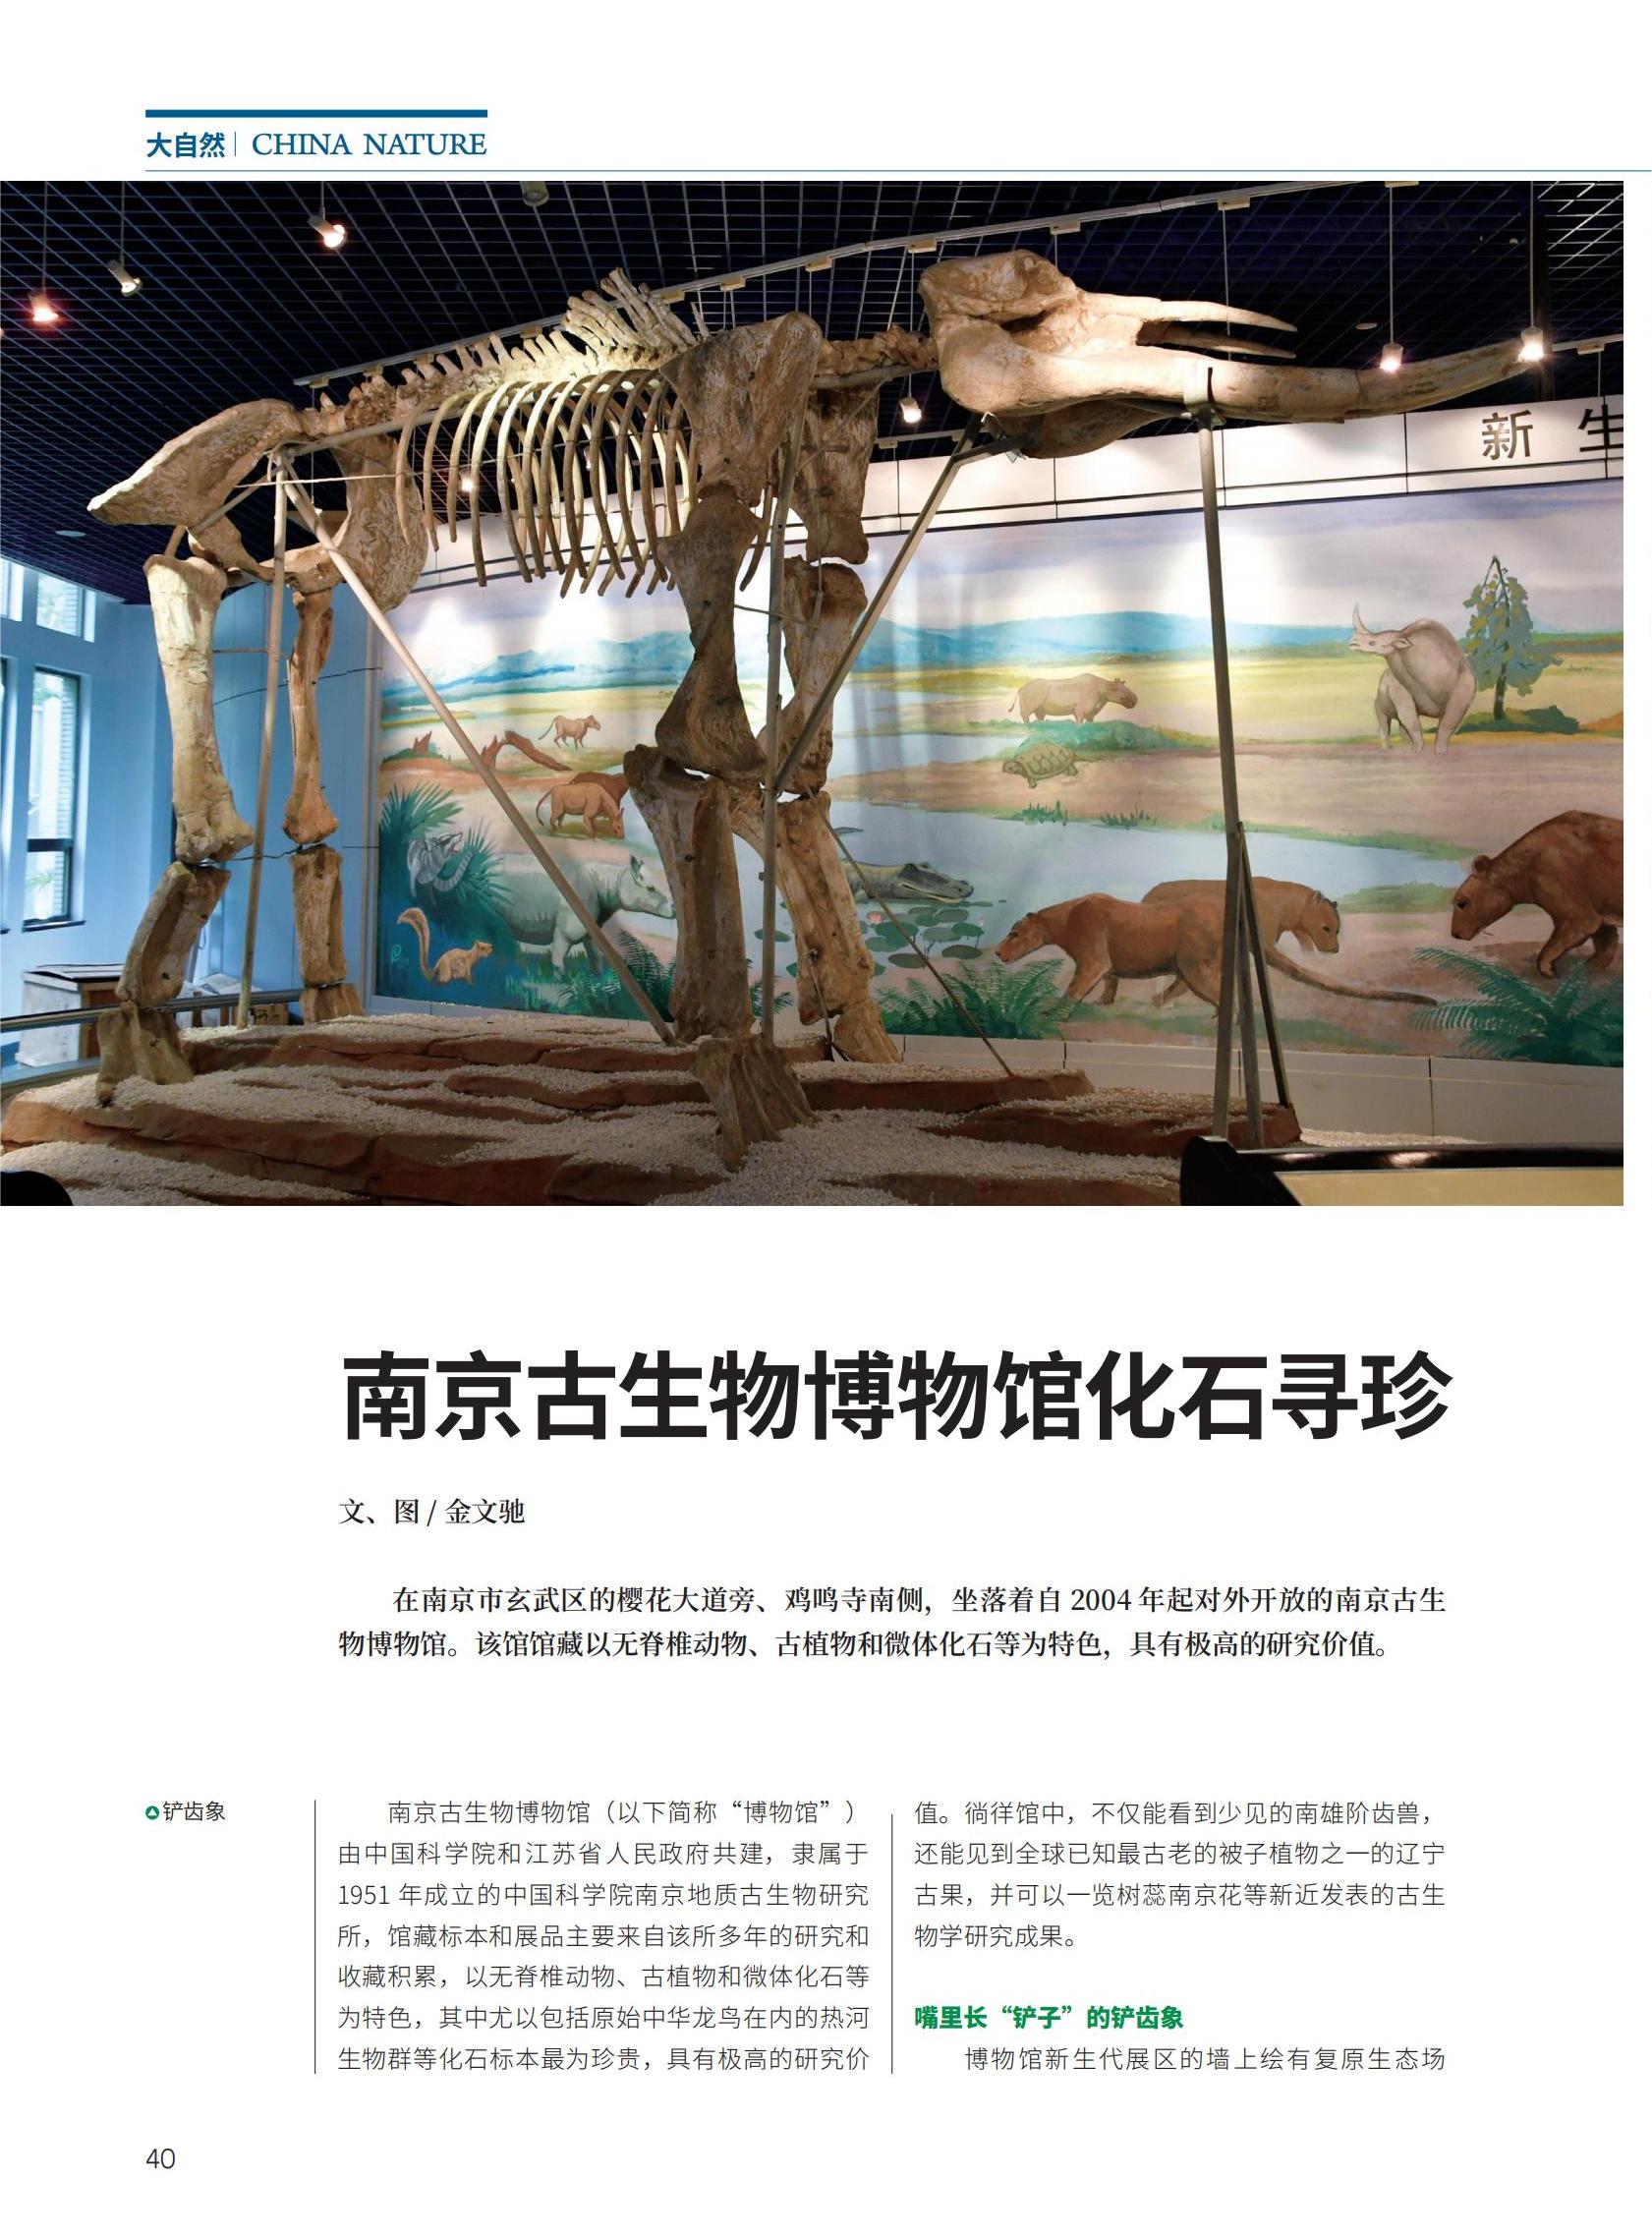 40-45南京古生物博物馆化石寻珍_00.jpg